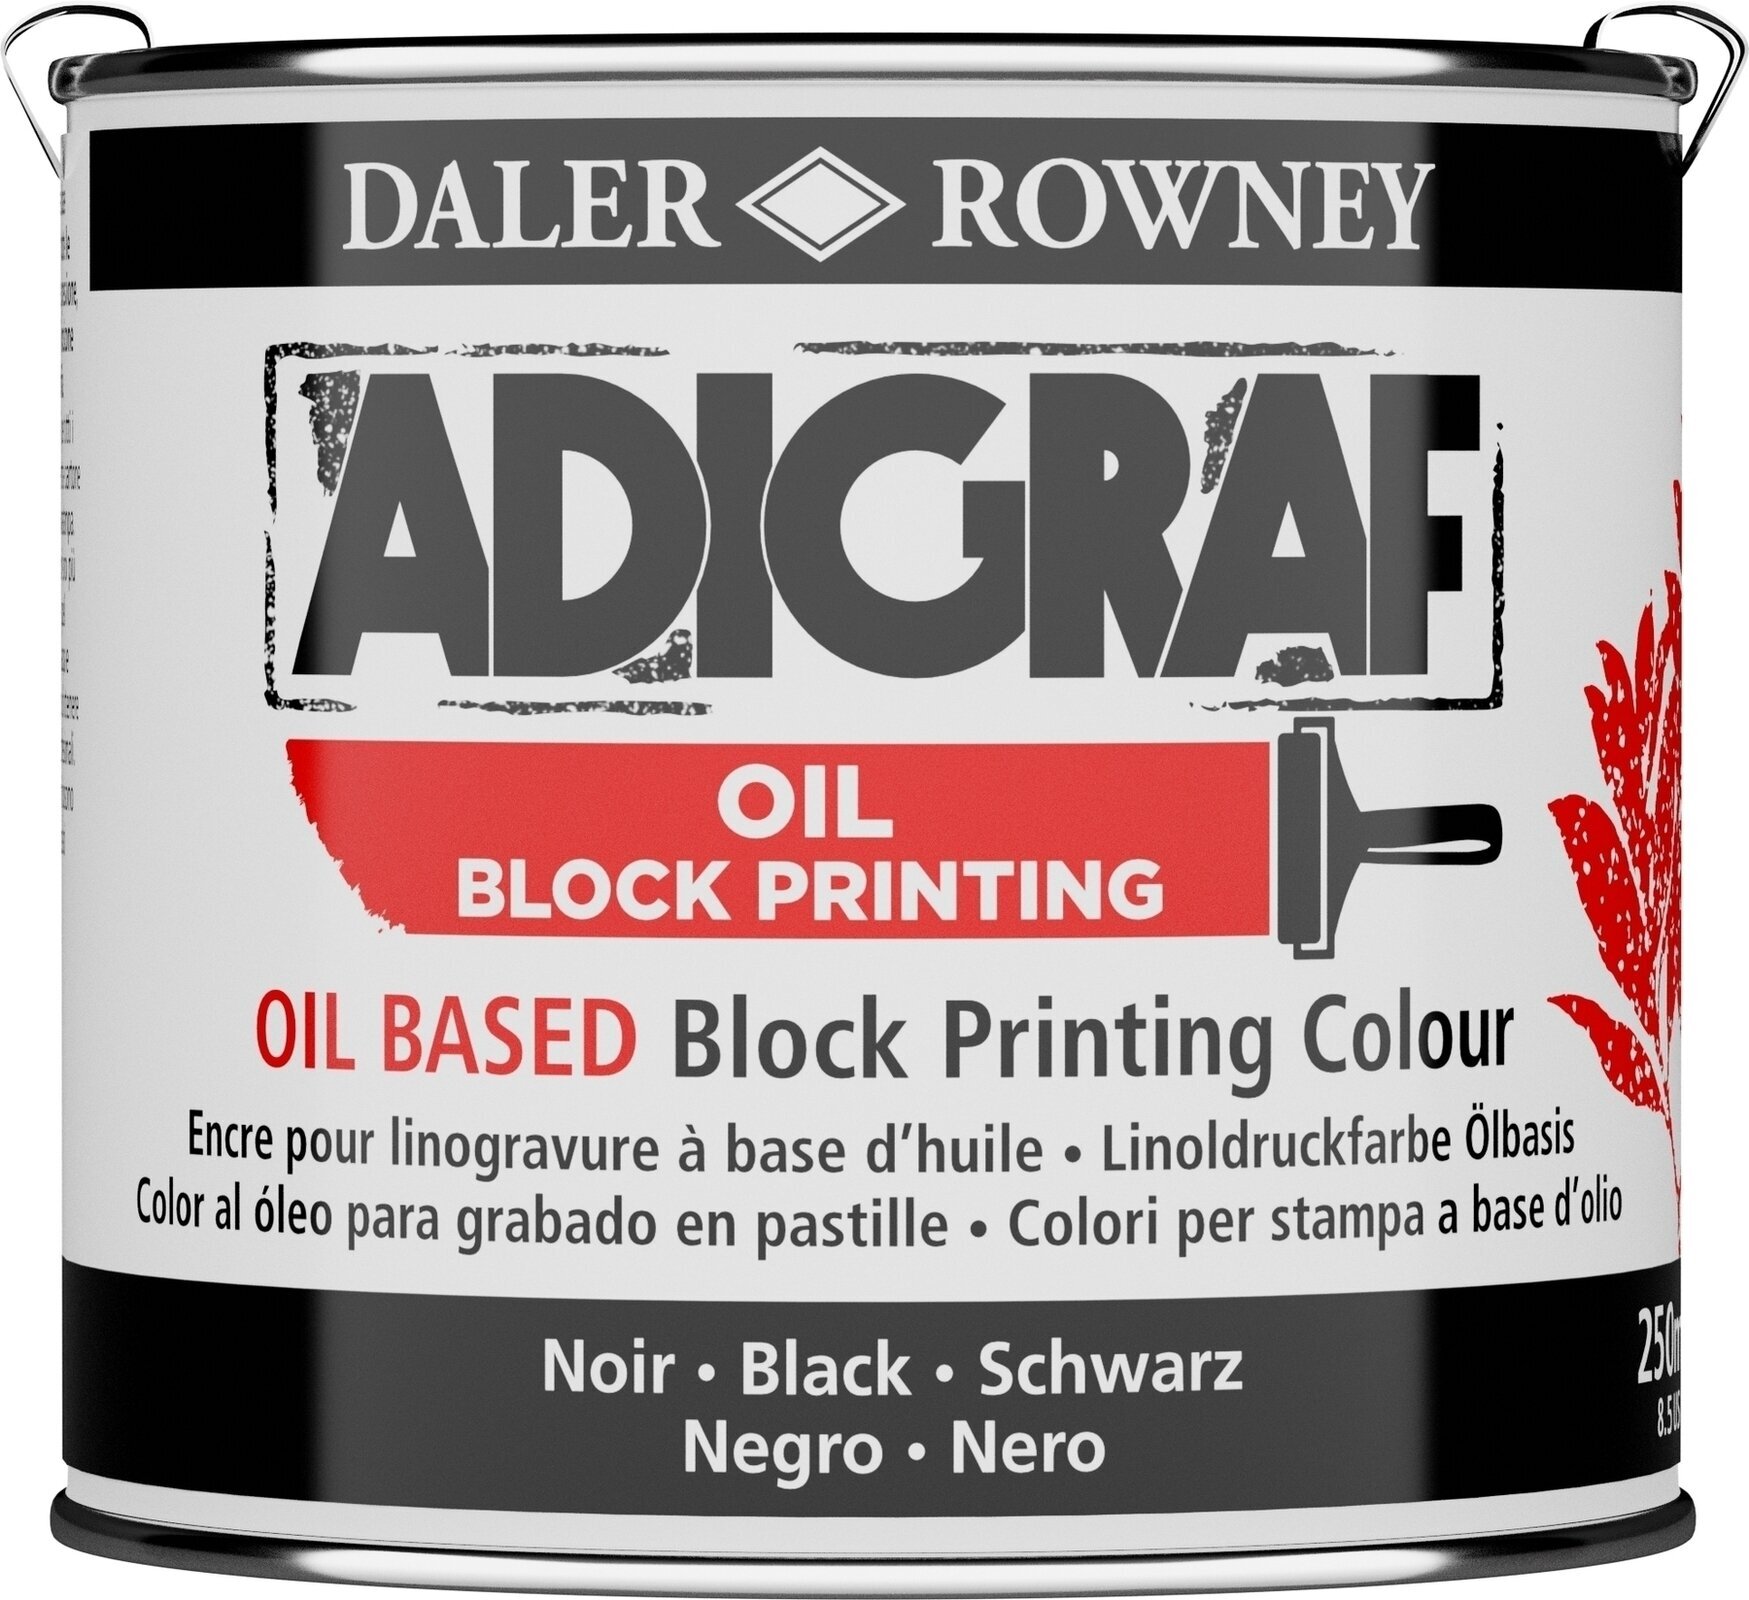 Peintures pour la linogravure Daler Rowney Adigraf Block Printing Oil Peintures pour la linogravure Black 250 ml